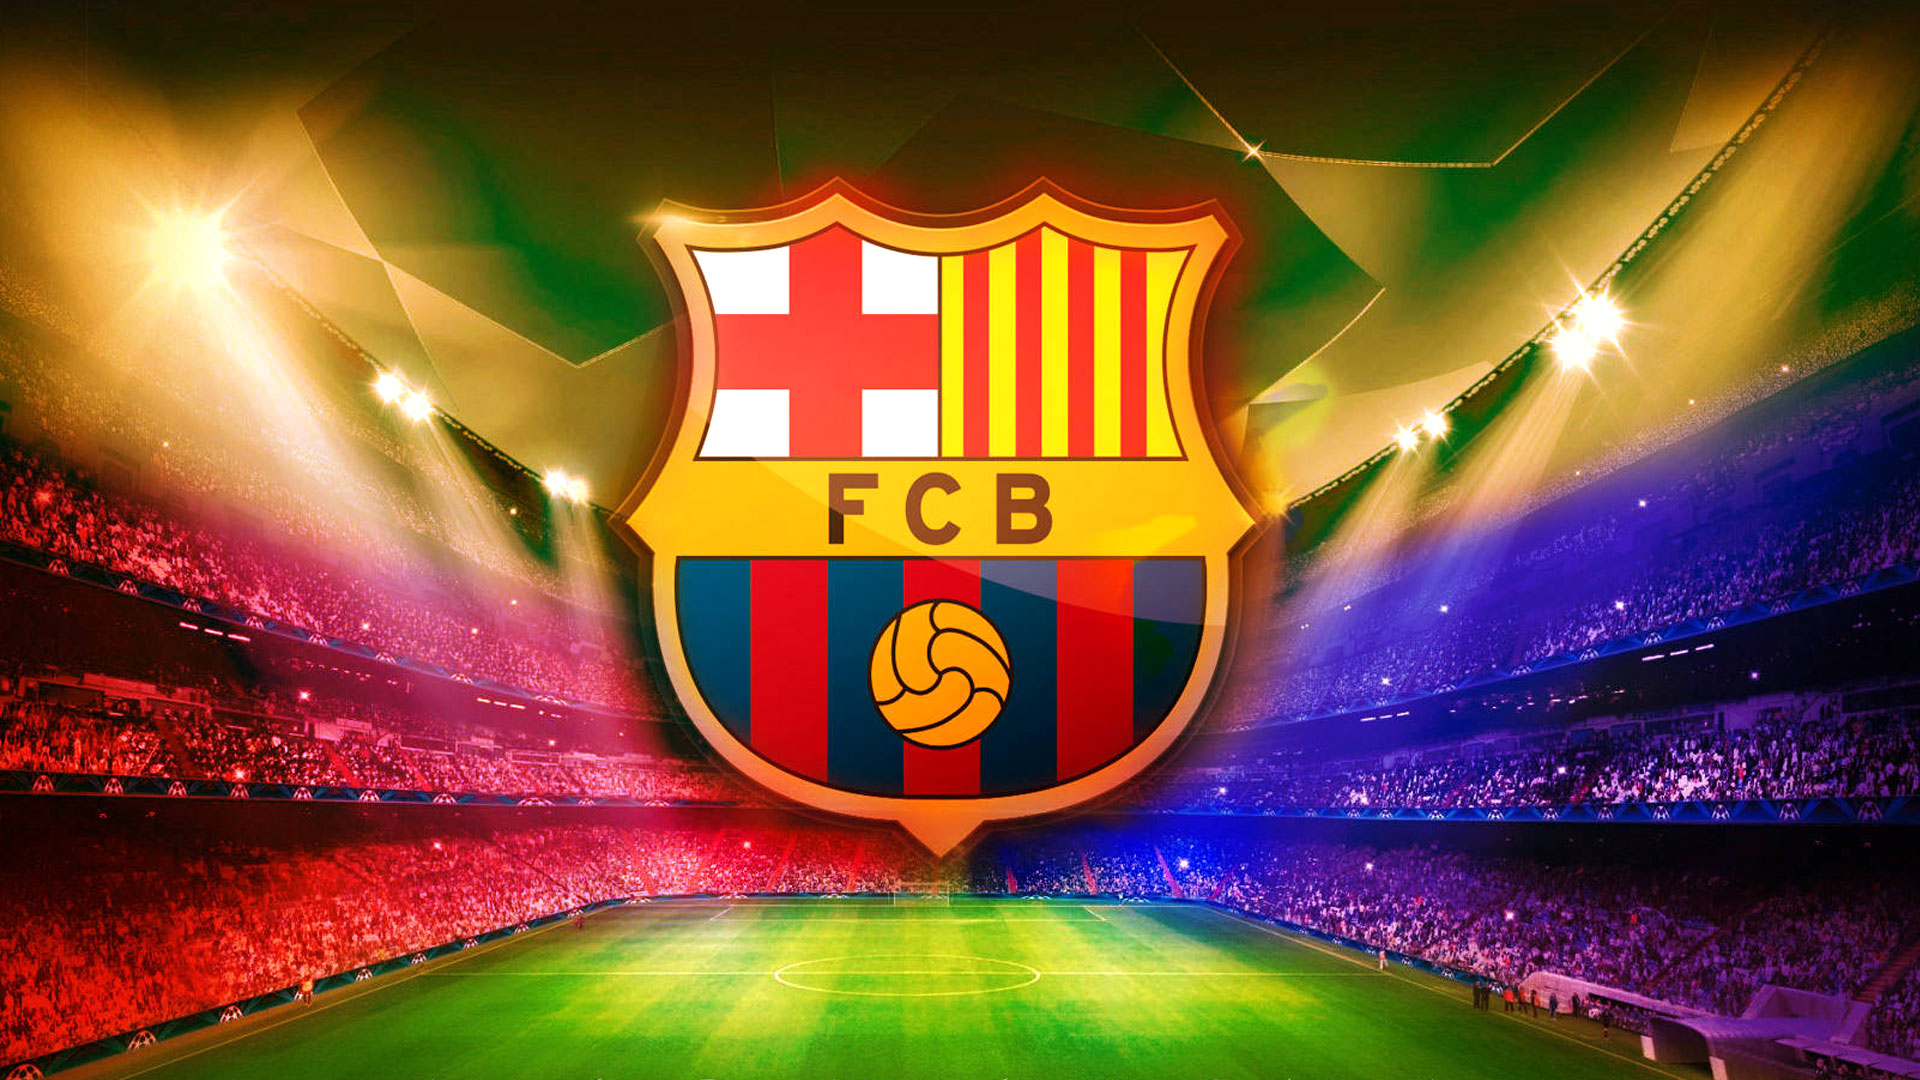 Free Download FC Barcelona Logo Wallpaper Download 1920x1080 For Your Desktop Mobile Tablet